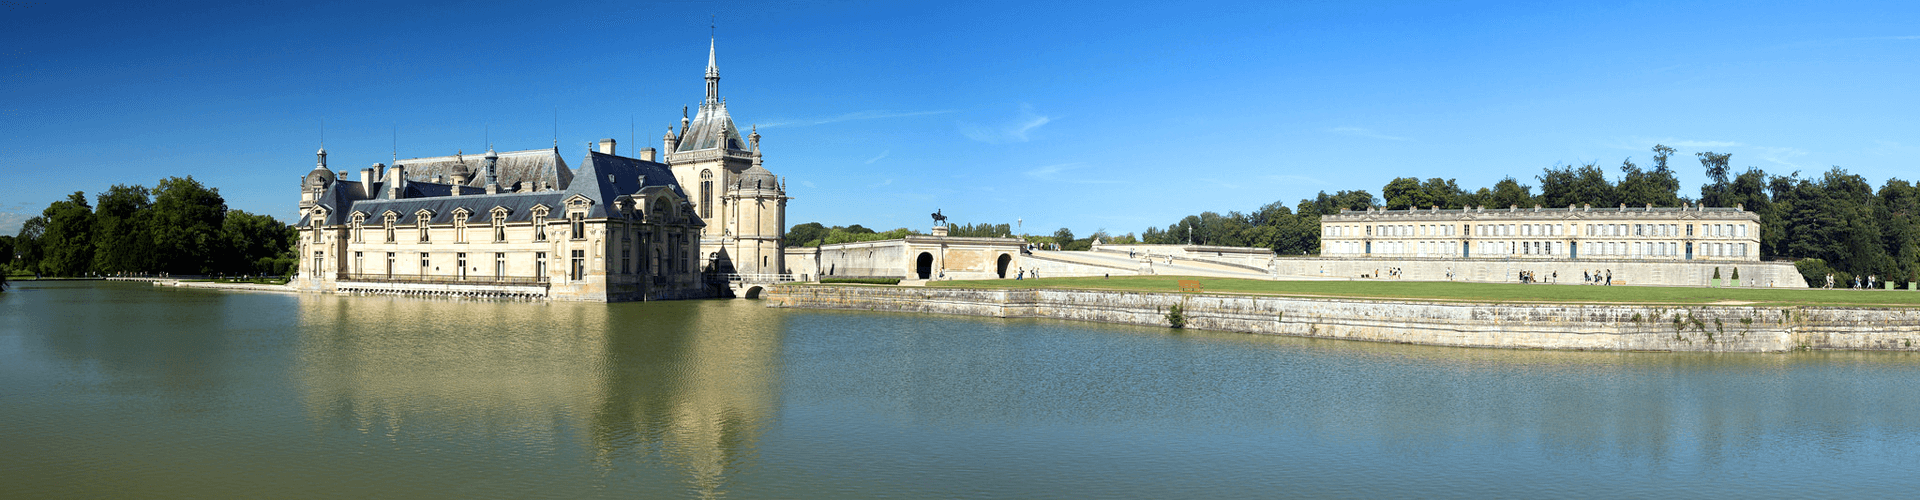 Bezienswaardigheden in Picardië: kasteel van Chantilly